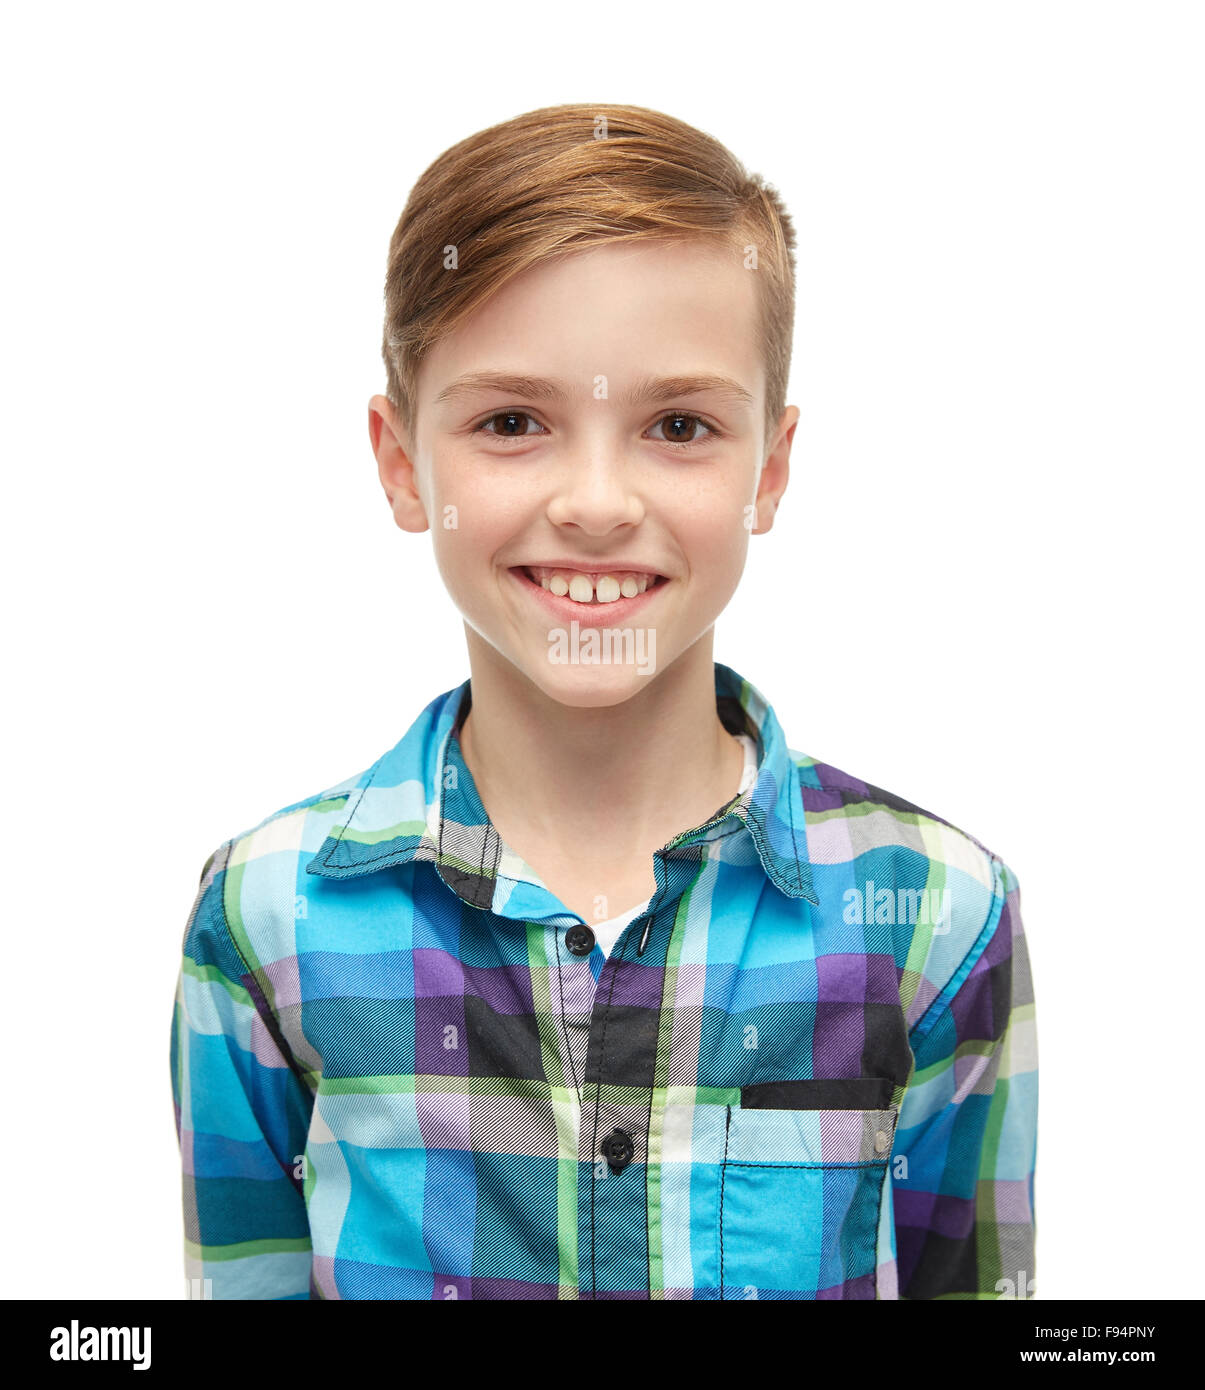 Smiling boy en chemise à carreaux Banque D'Images